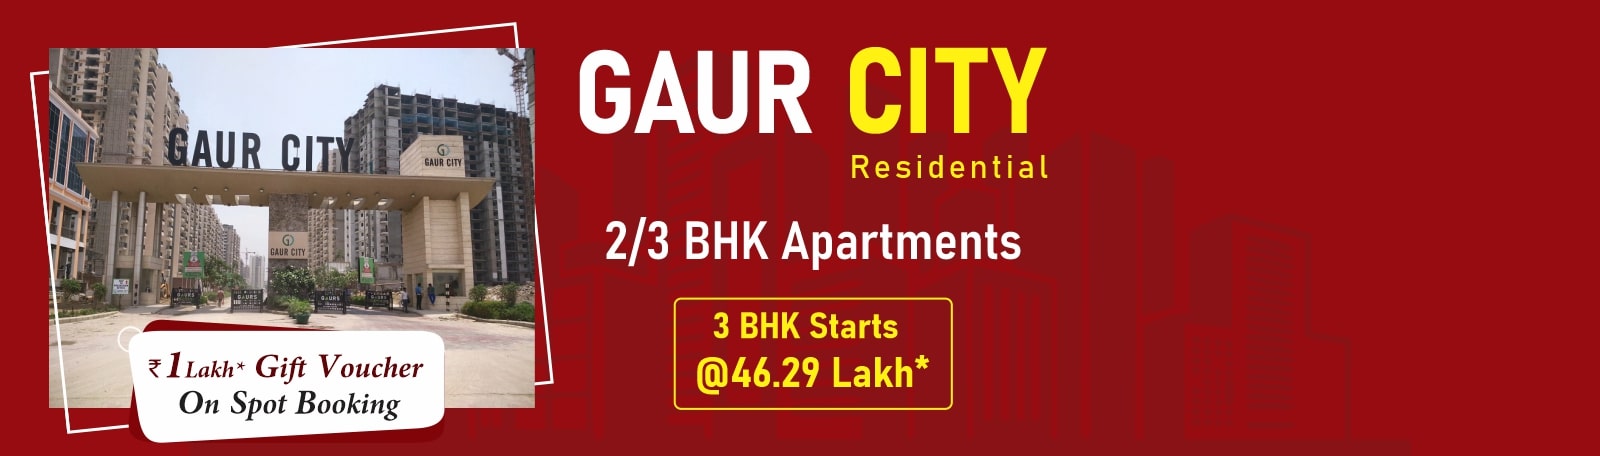 Gaur City banner